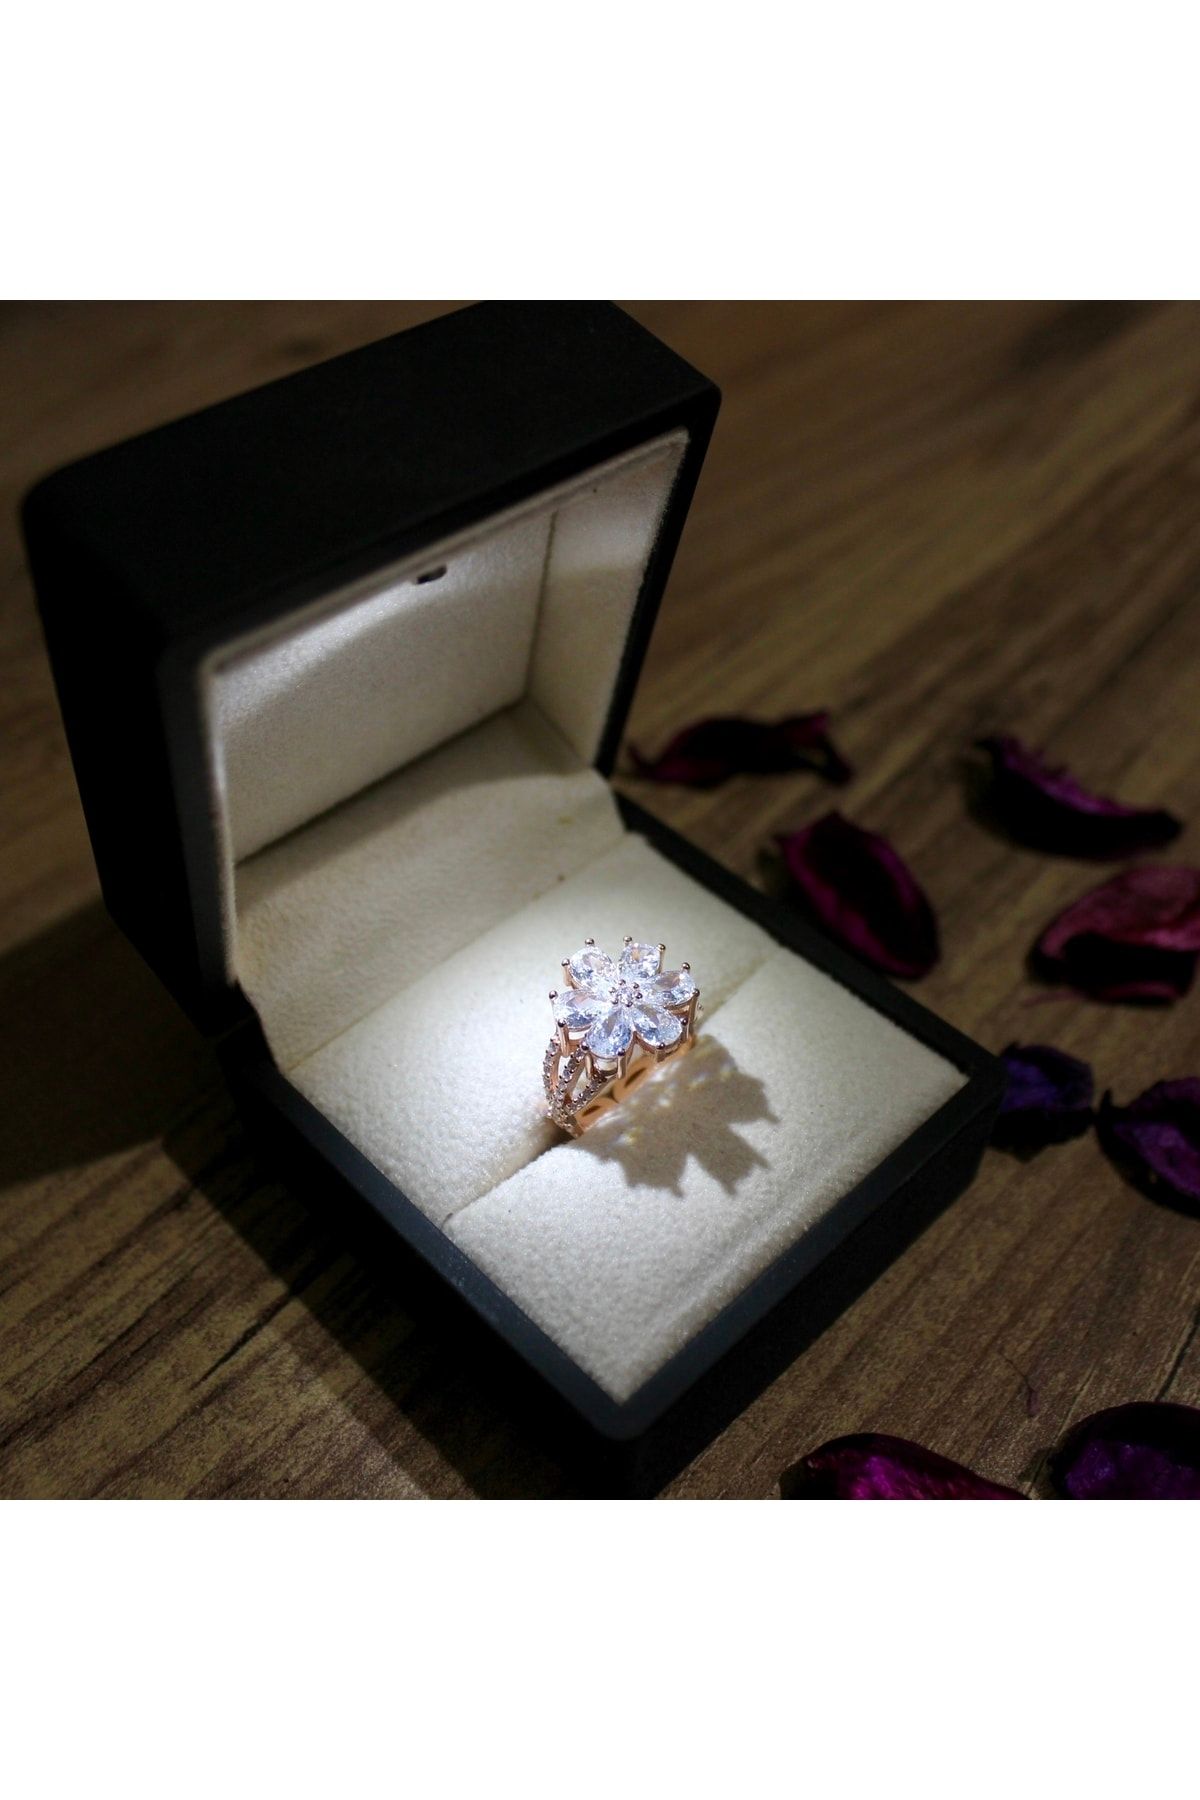 LOTUS JW Unutma Beni Çiçeği Yüzük & Işıklı Yüzük Kutusu - 925 Ayar Gümüş Yüzük